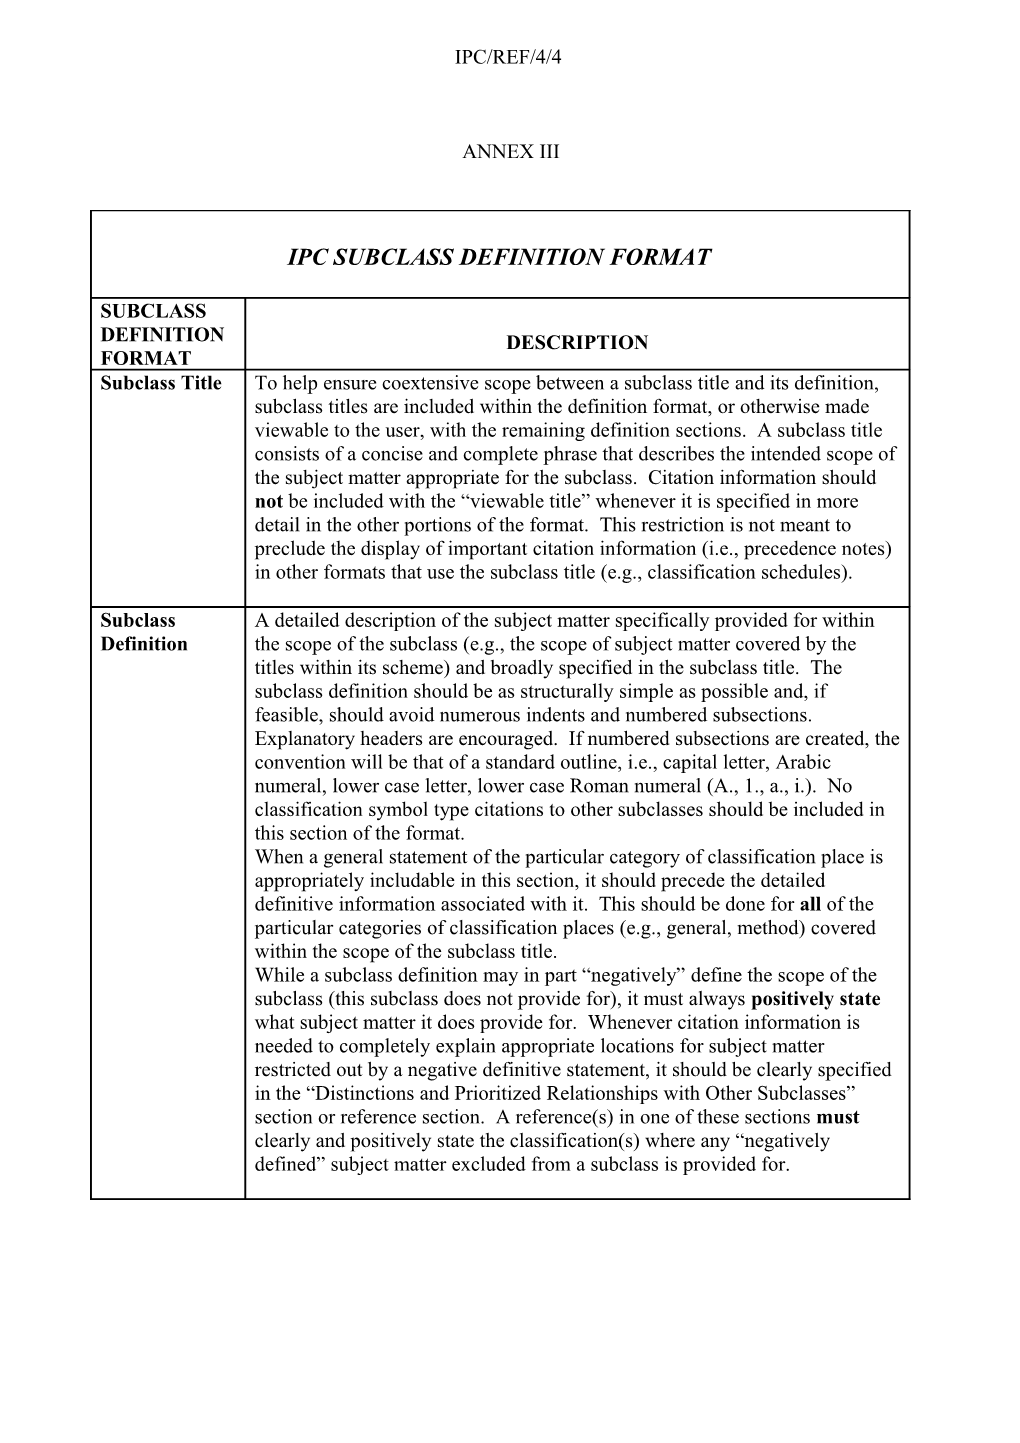 IPC/REF/4/4: Report (Annex 3)